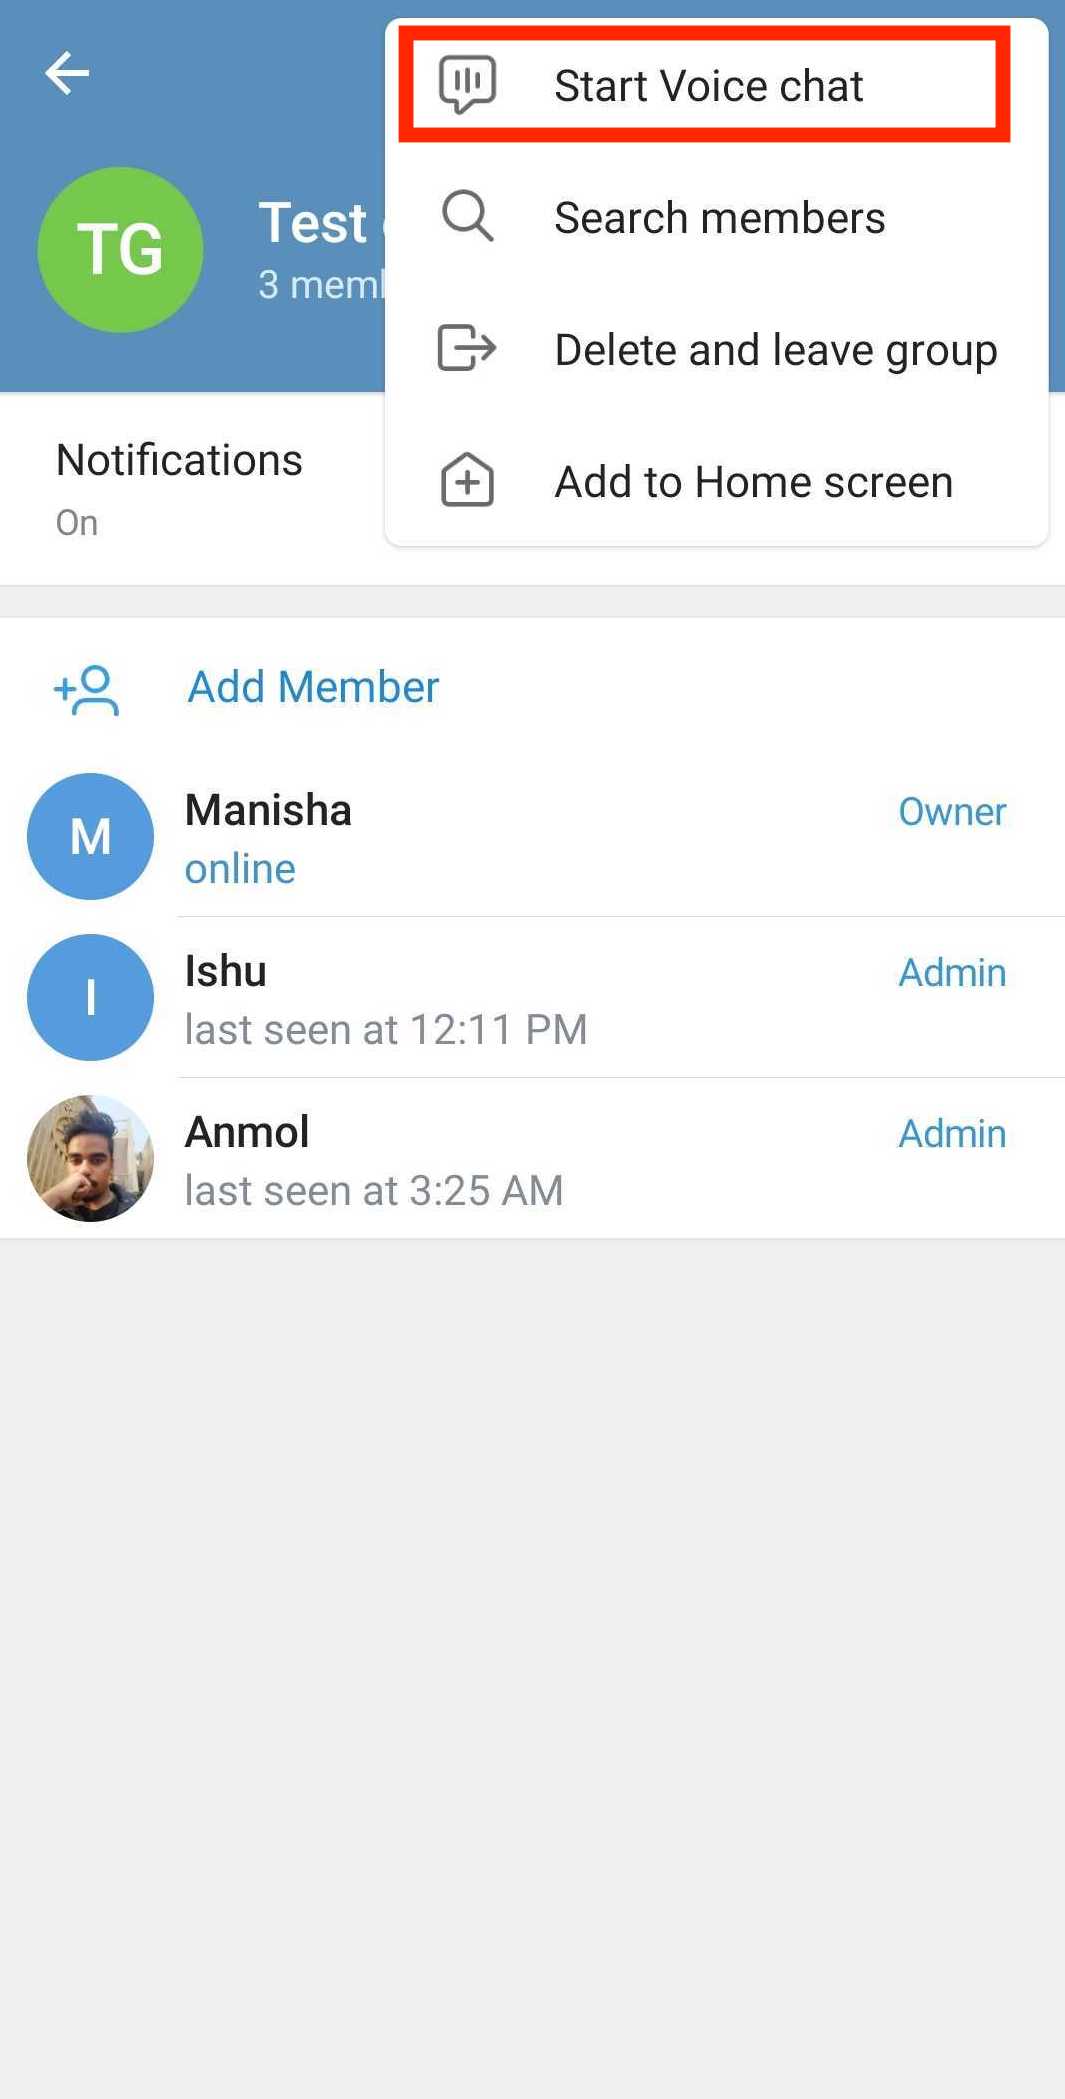 запустить групповой голосовой вызов в Telegram на Android